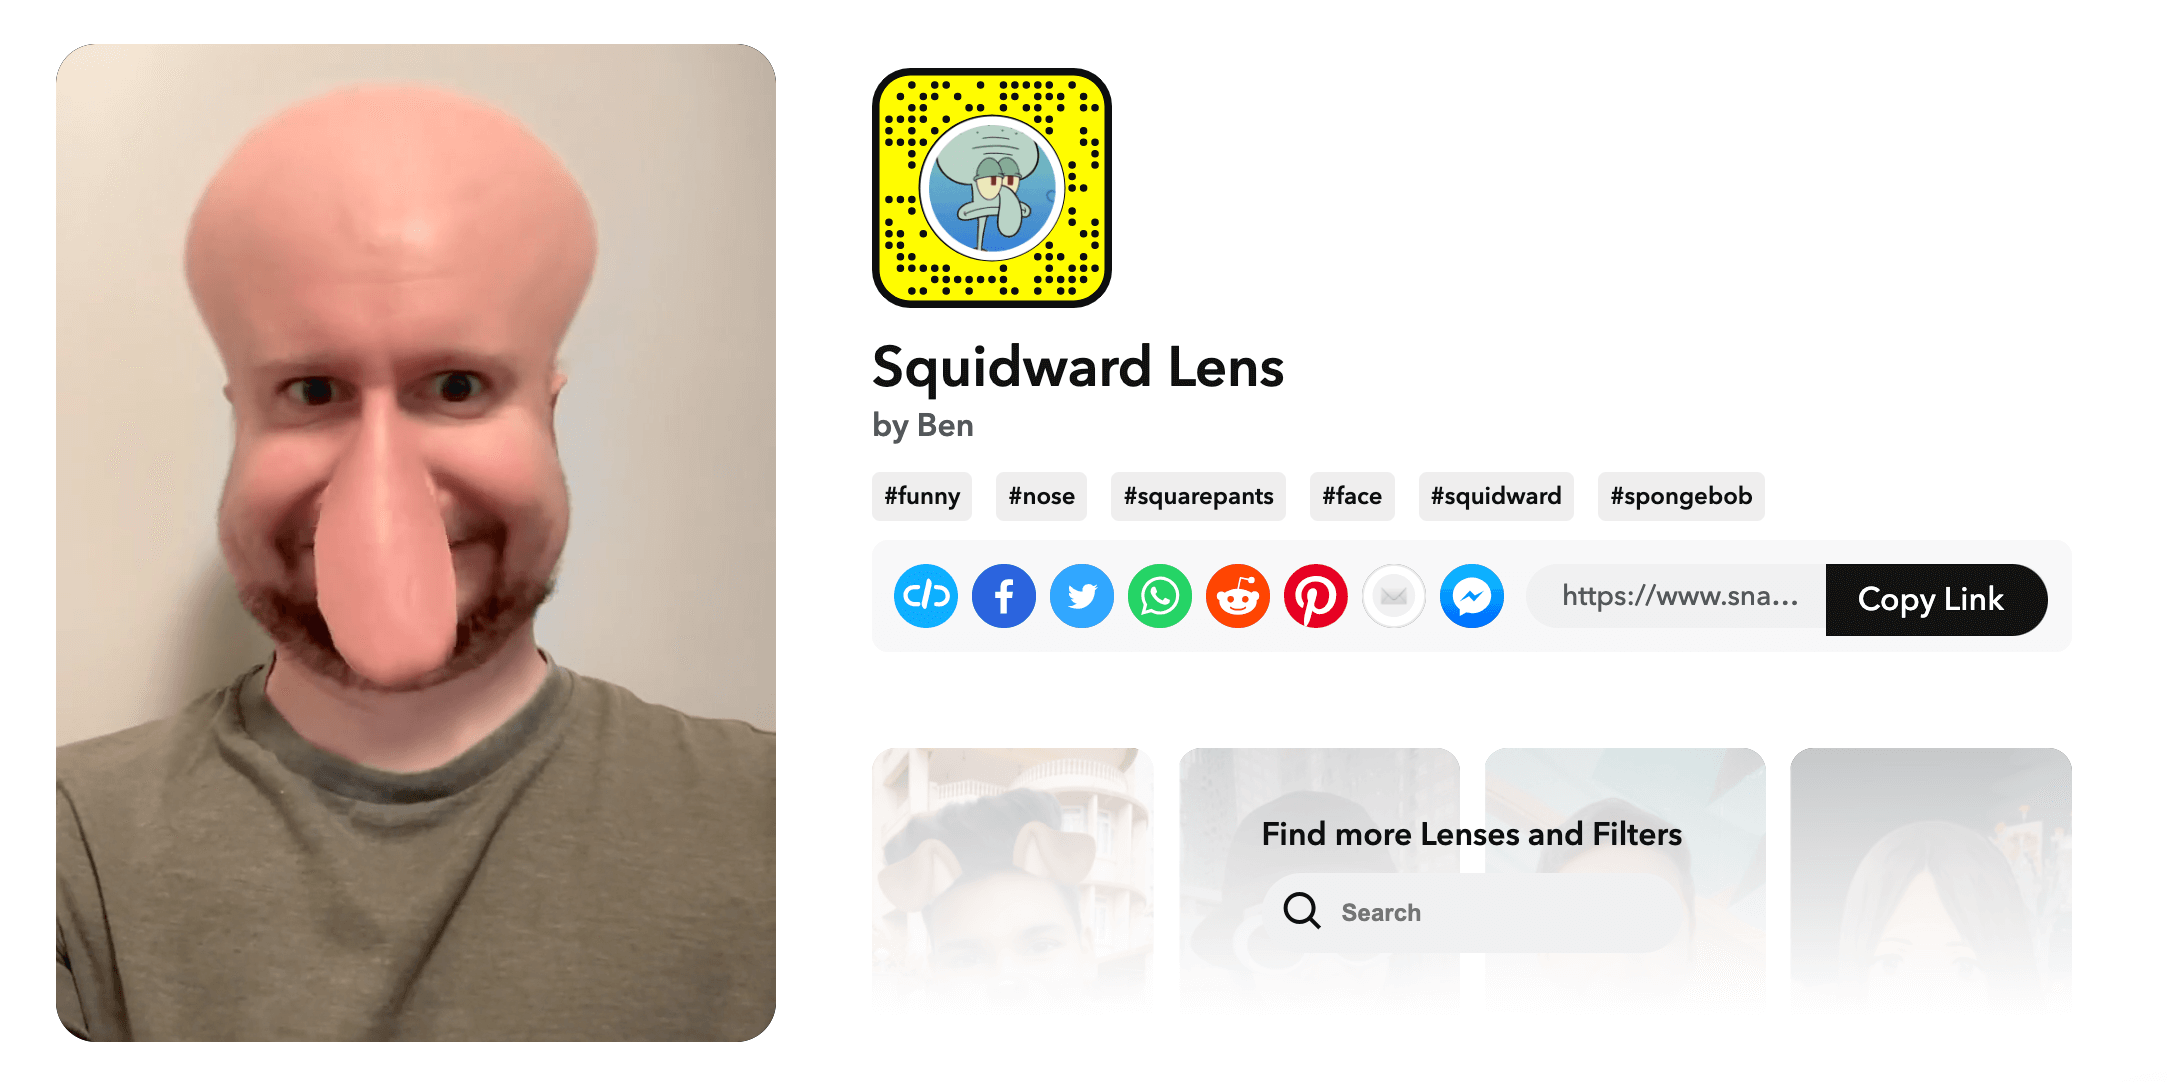 6 - squidward lens